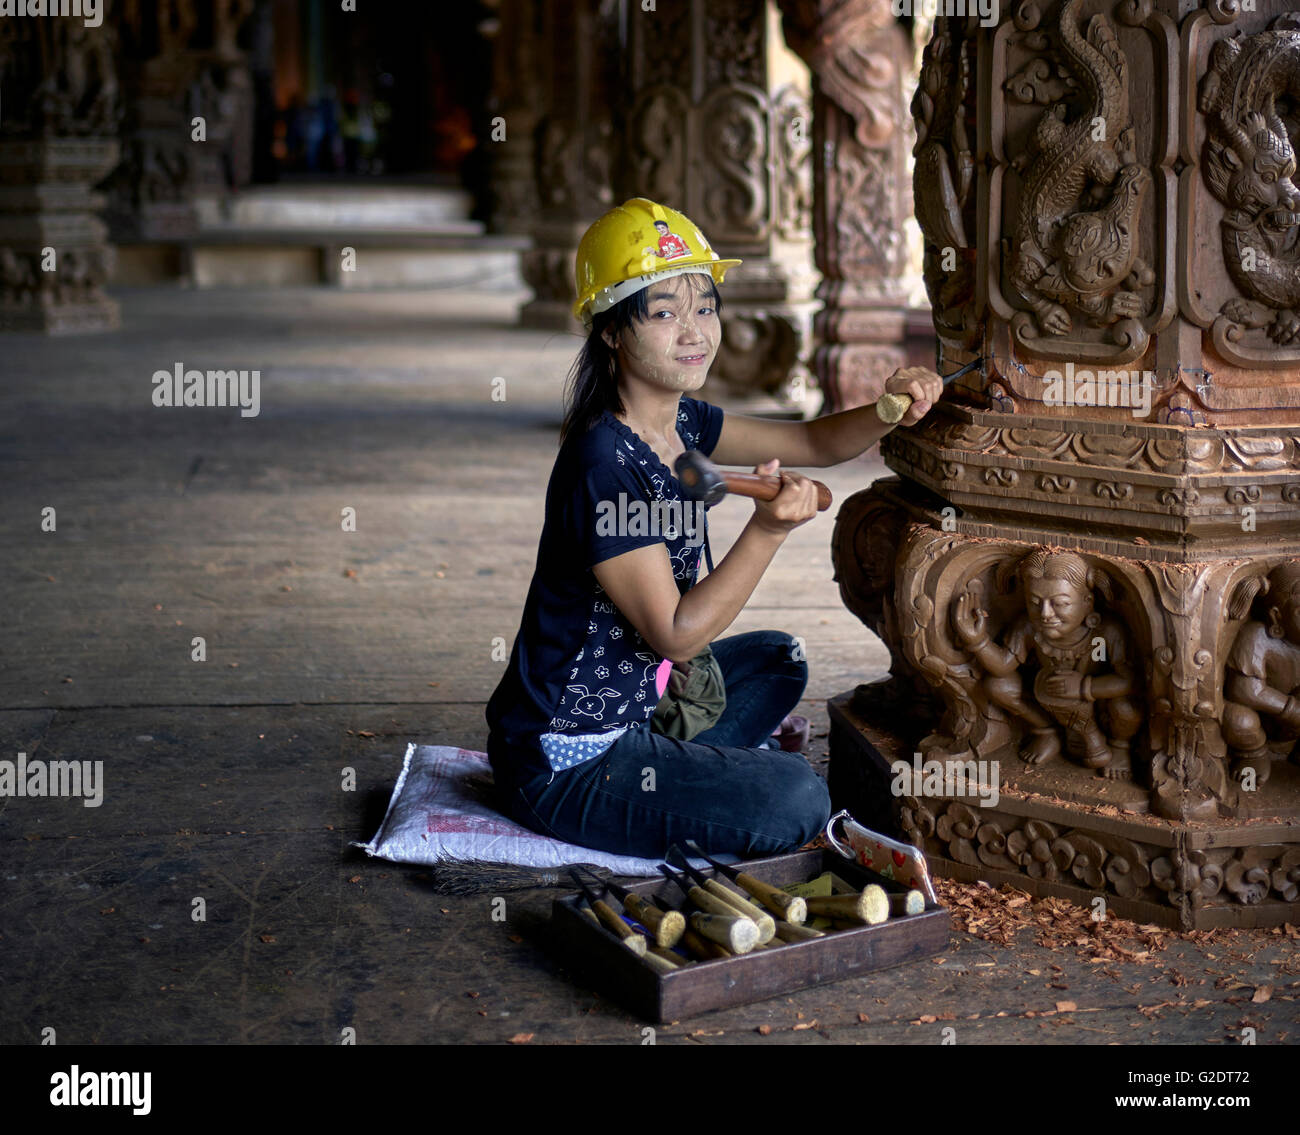 Craftswoman Thailandia. Giovane costruttore femminile scolpisce e scolpisce il legno presso il Santuario della verità tempio buddista indù. Pattaya Thailandia S. E. Asia Foto Stock